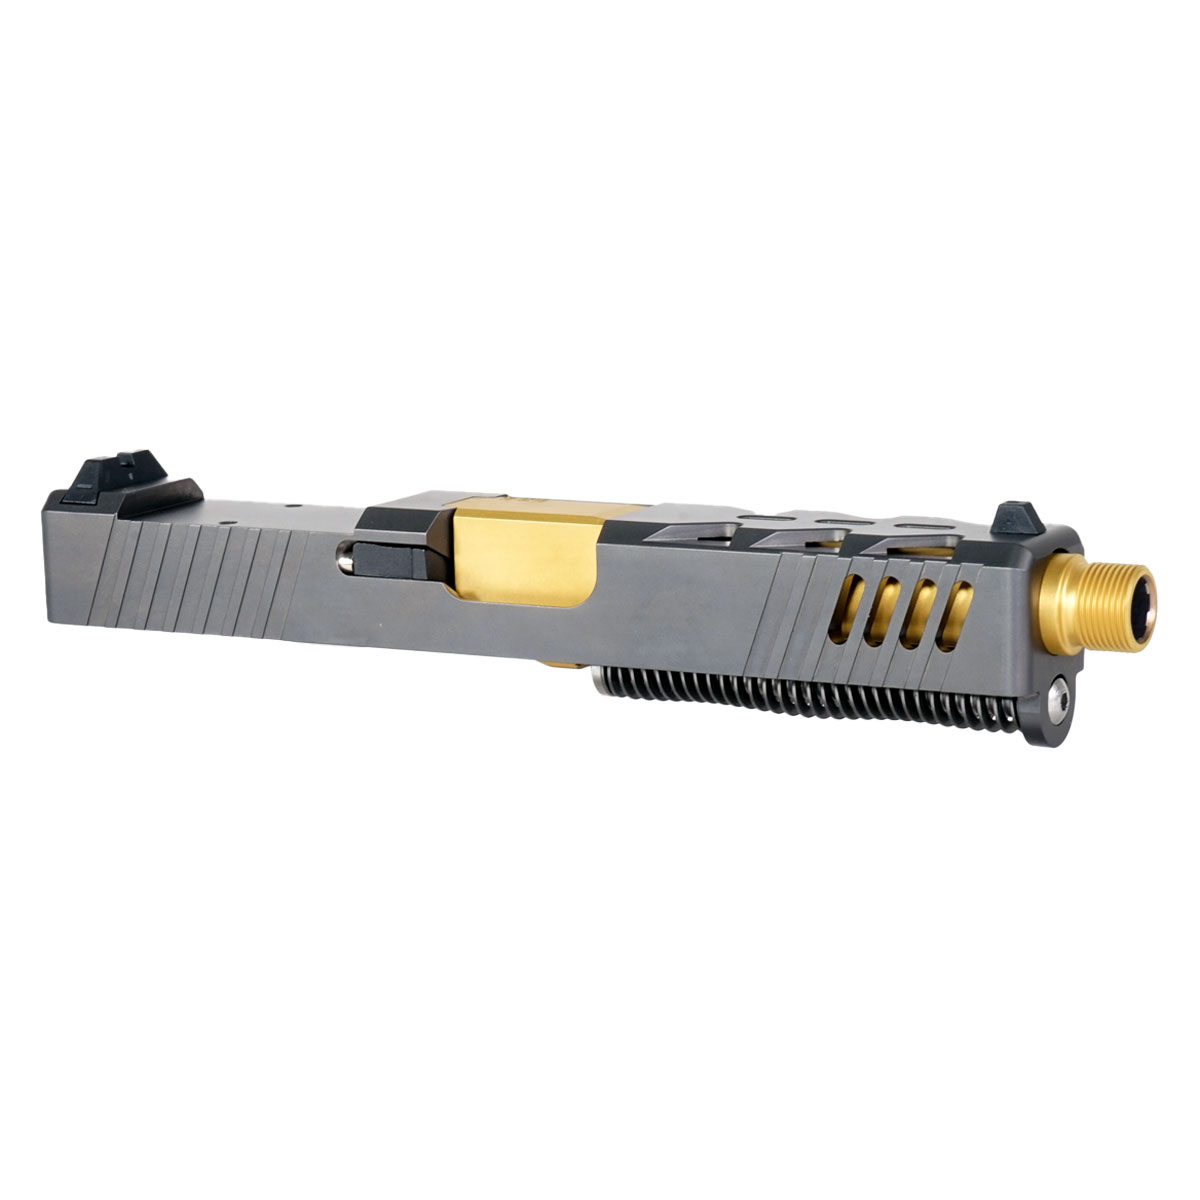 DD 'The Rickster' 9mm Complete Slide Kit - Glock 19 Gen 1-3 Compatible